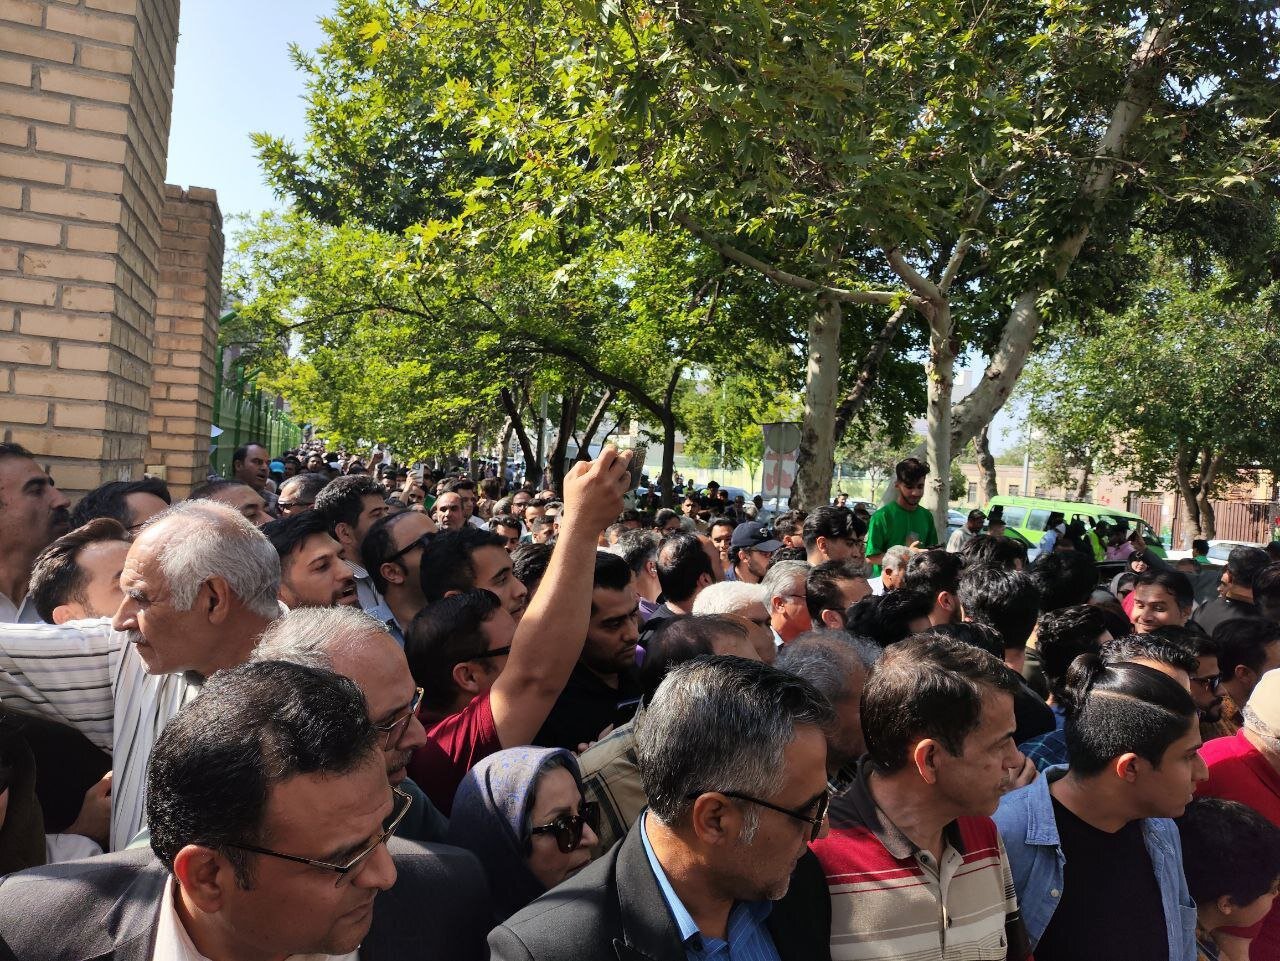 موج مردمی در مشهد برای سخنرانی محمد جواد ظریف / مردم پشت درهای بسته ماندند + تصاویر 6